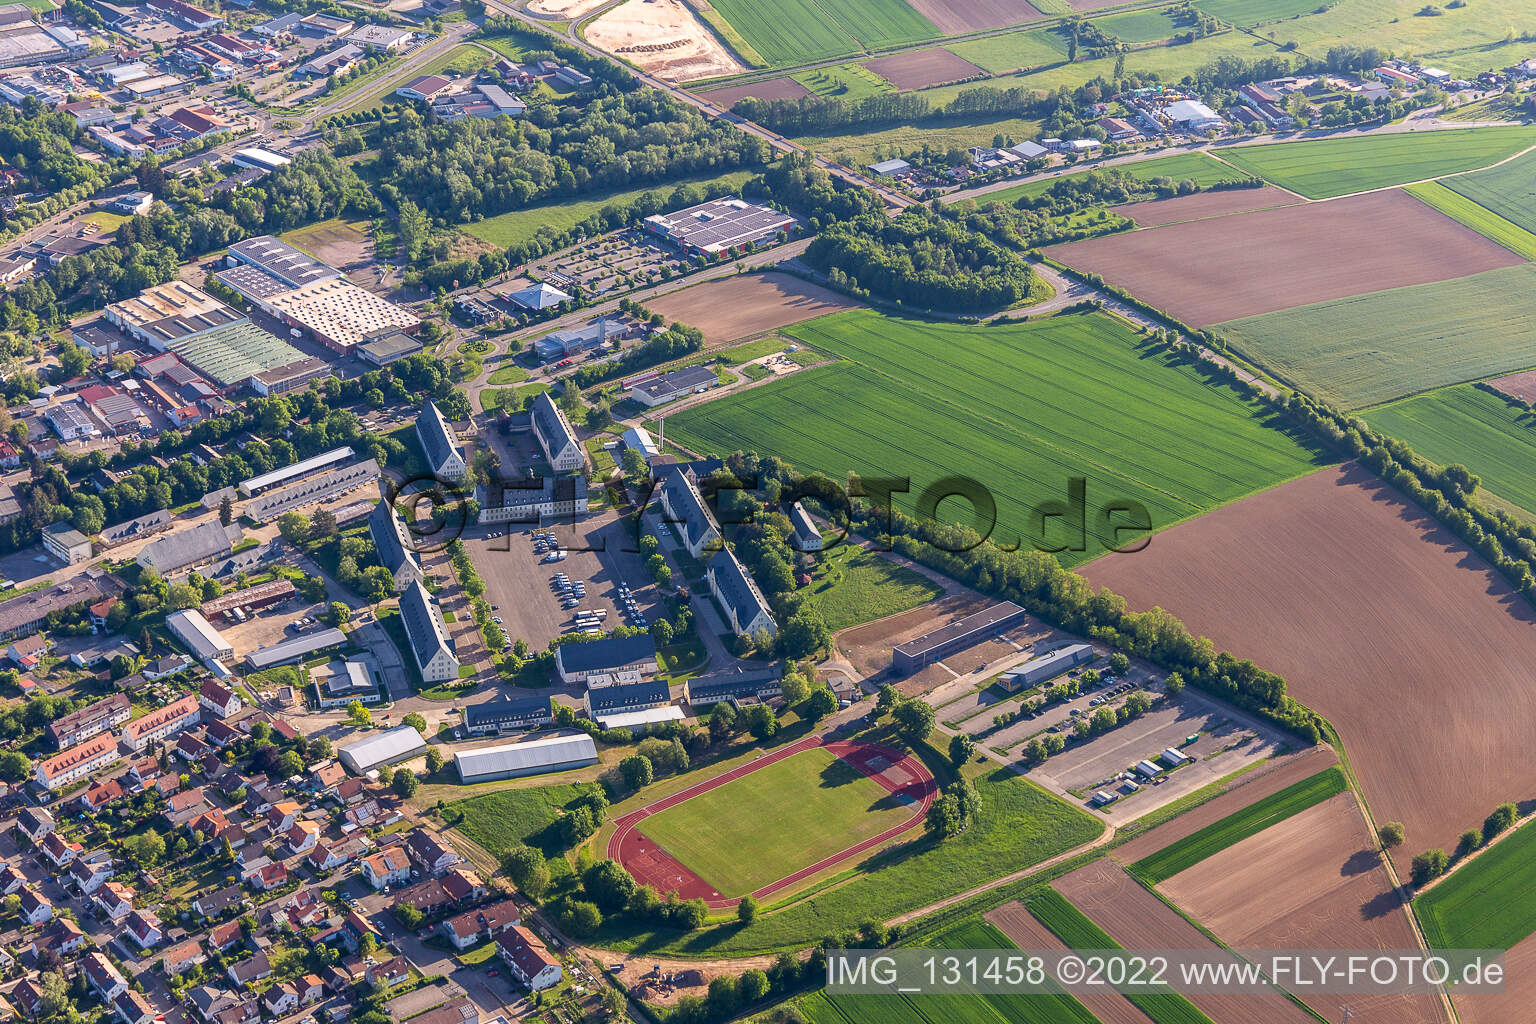 Vue aérienne de Police fédérale Bad Bergzabern à Bad Bergzabern dans le département Rhénanie-Palatinat, Allemagne